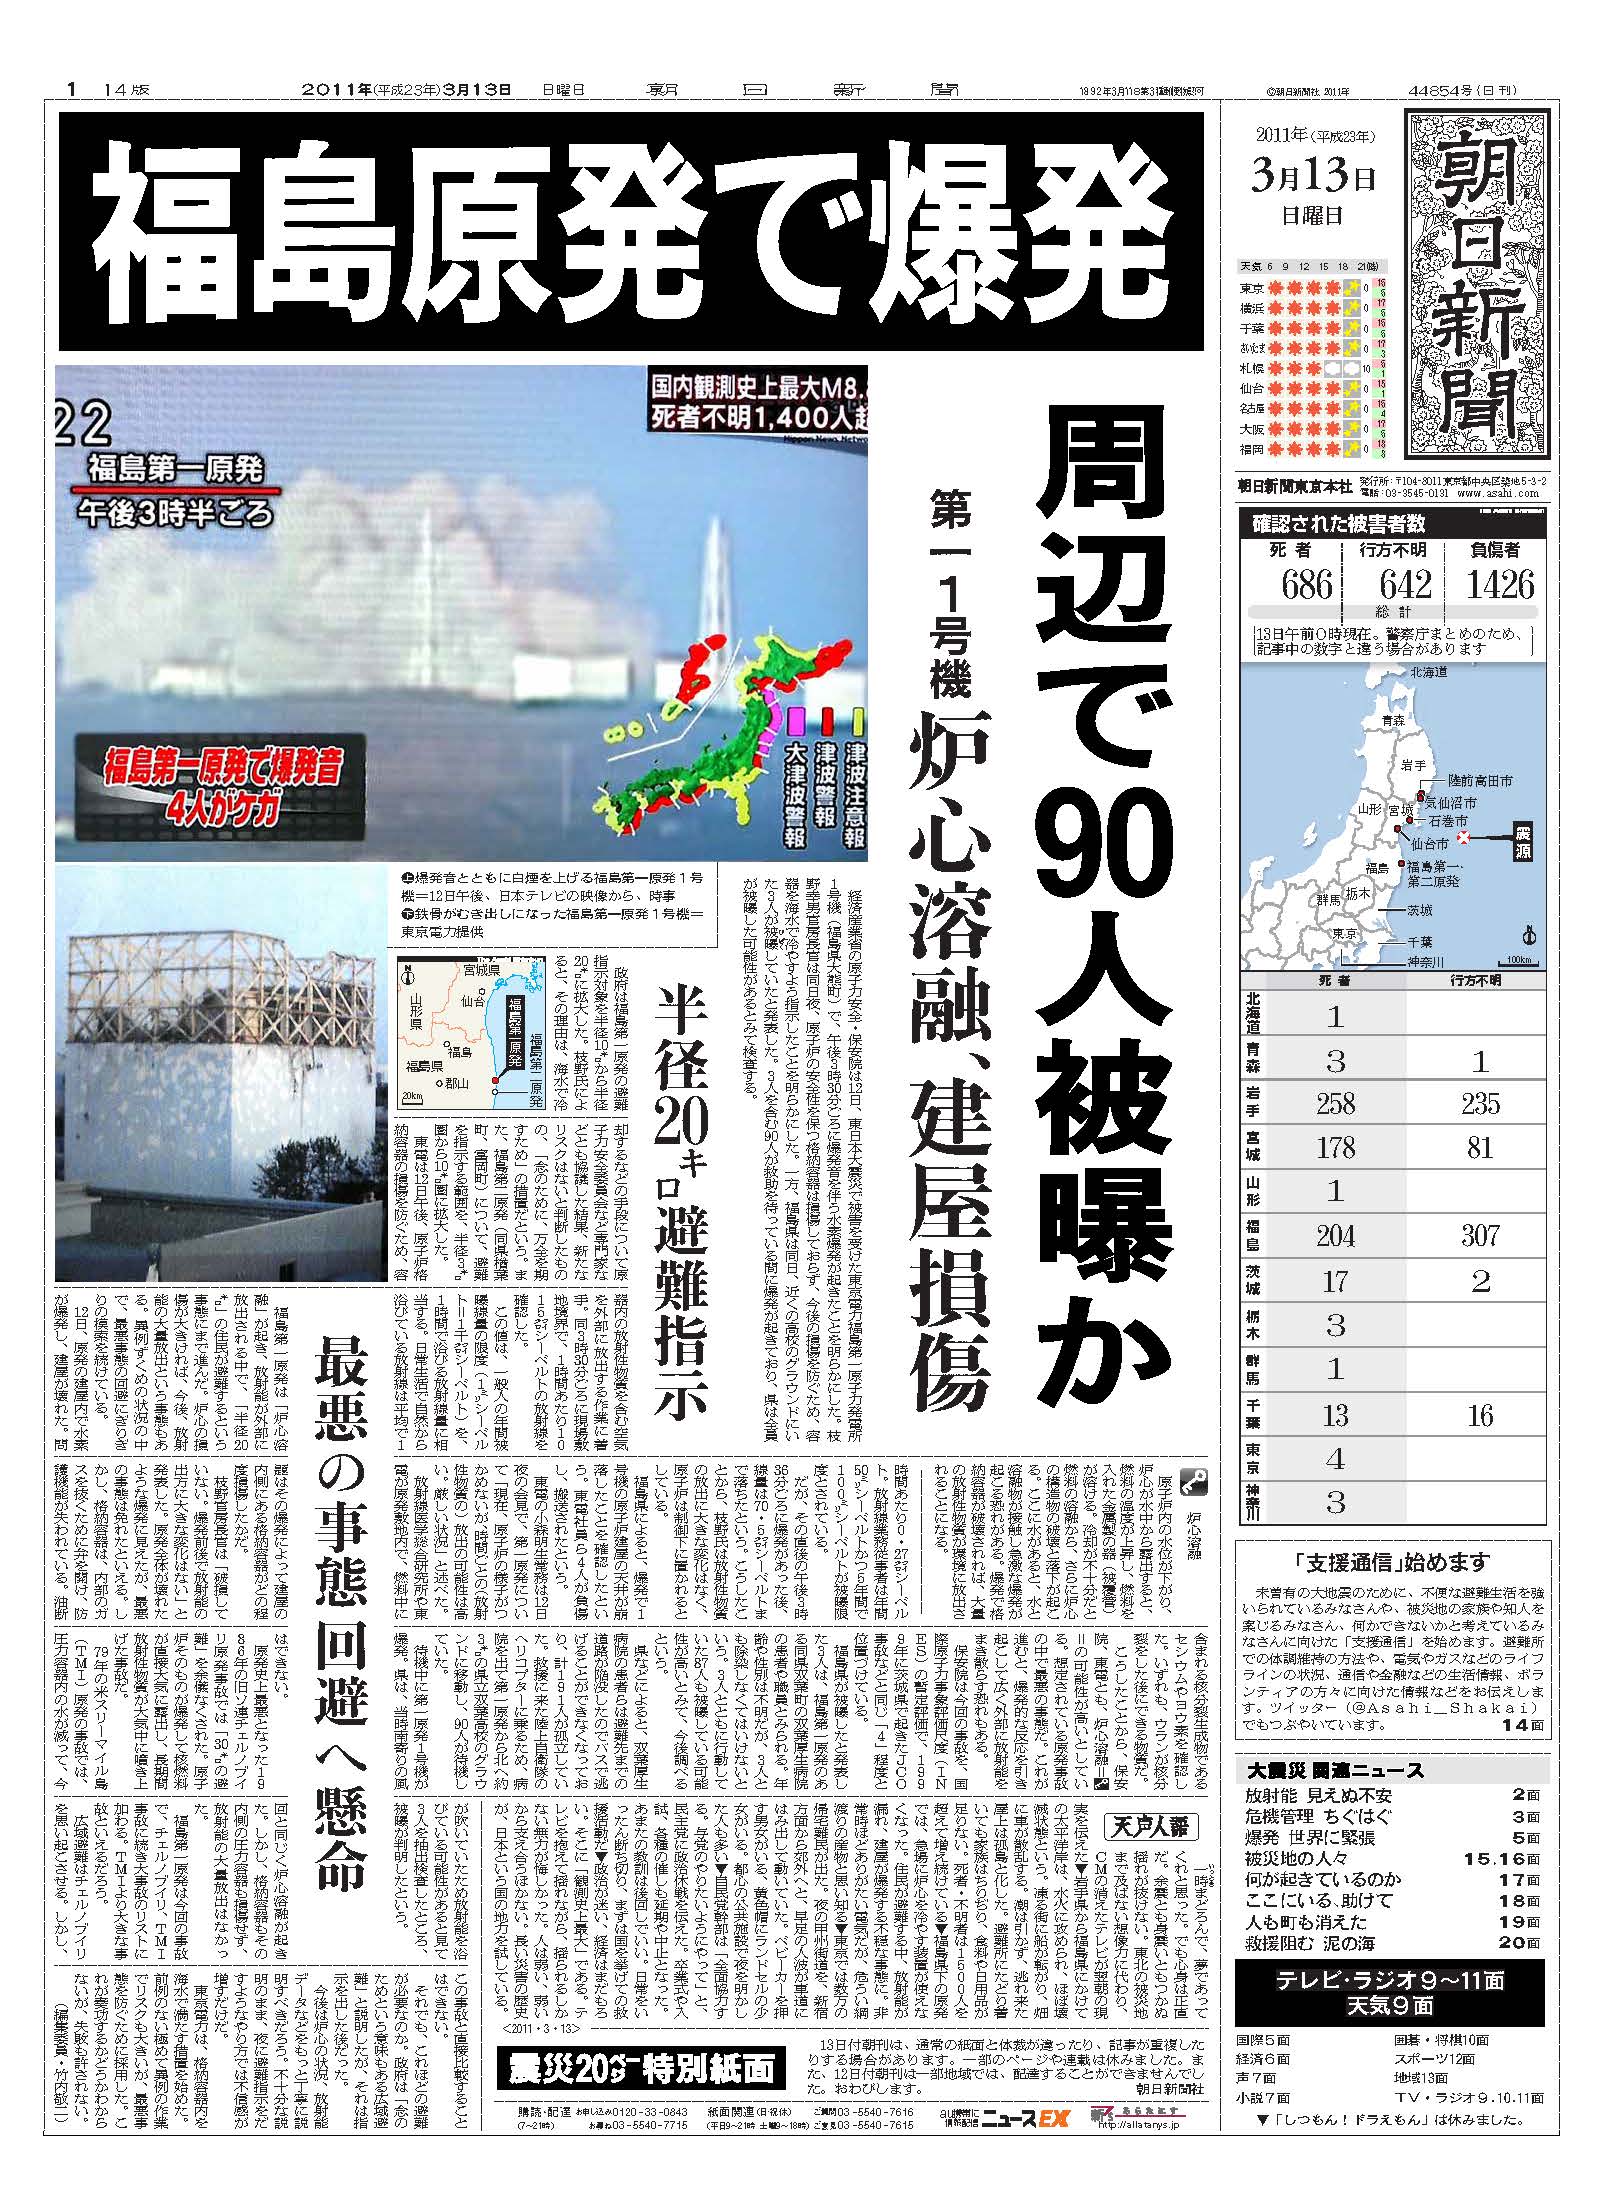 福島第一原発事故の現実と認識、その報道、それらのギャップ